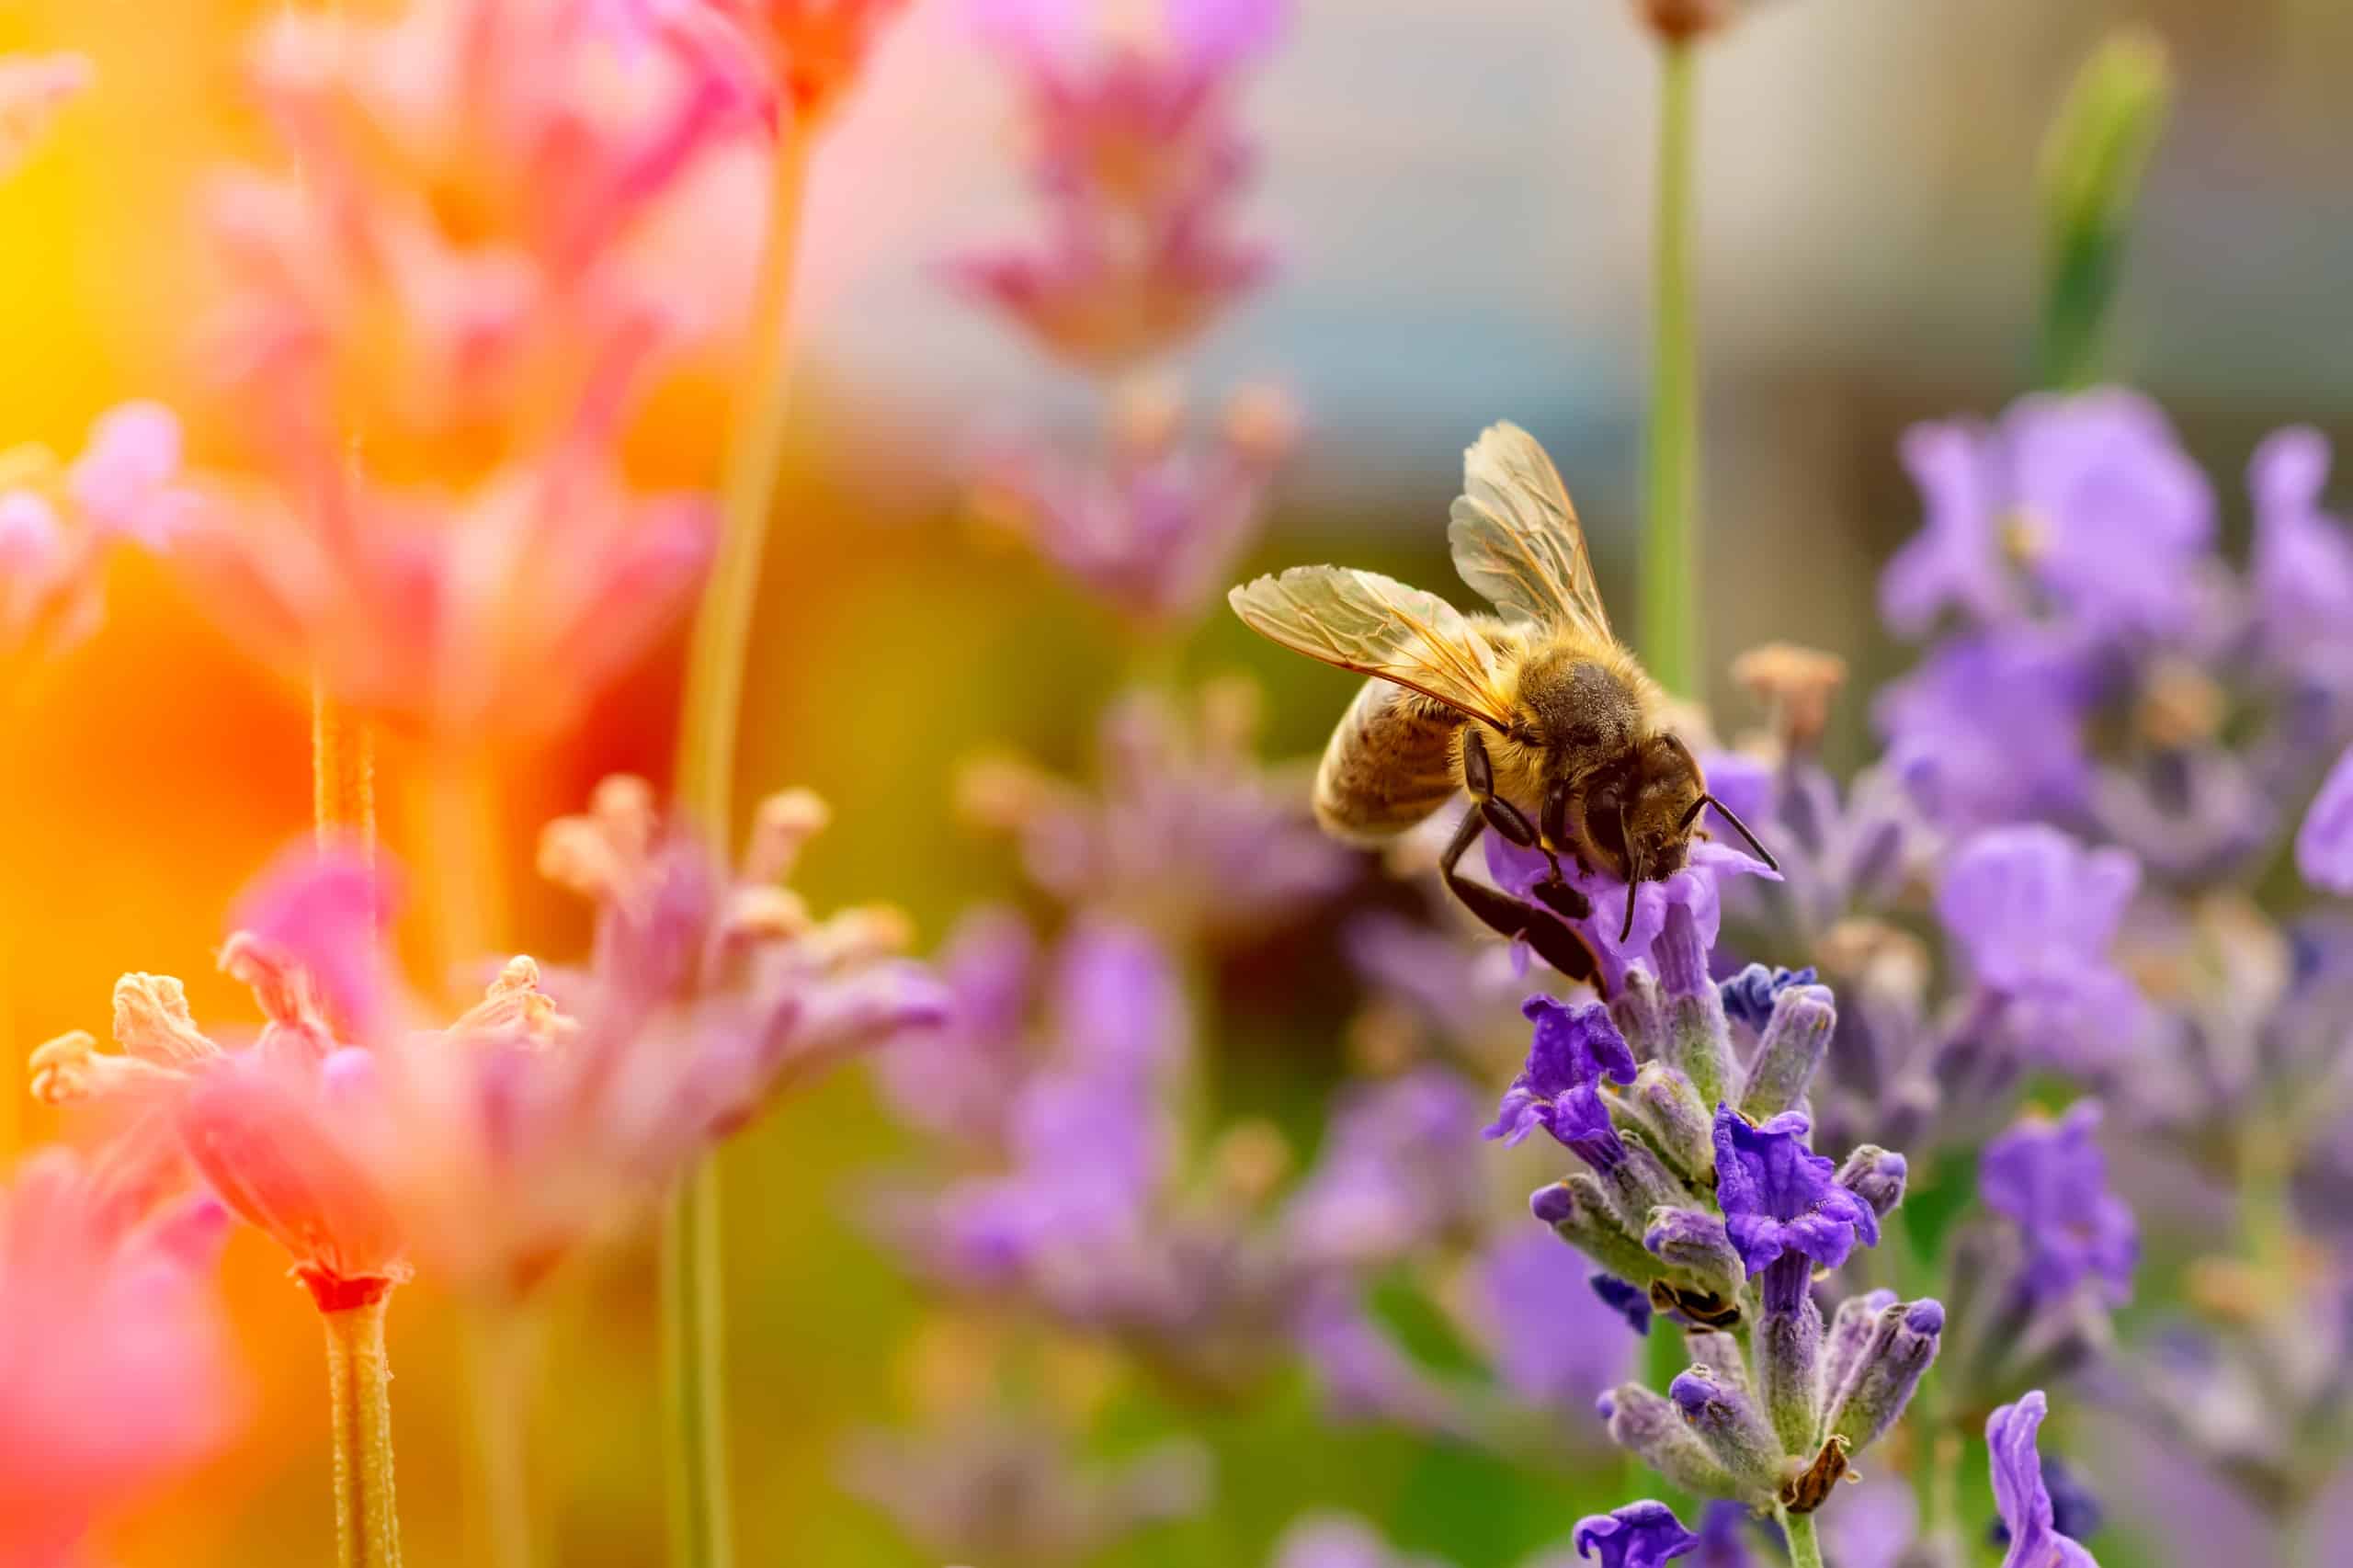 CLAYTEC möchte auf die Wichtigkeit der Artenvielfalt von Wildbienen besonderes aufmerksam machen. Daher unterstützen wir ganzjährig die AKTIONGRUEN.